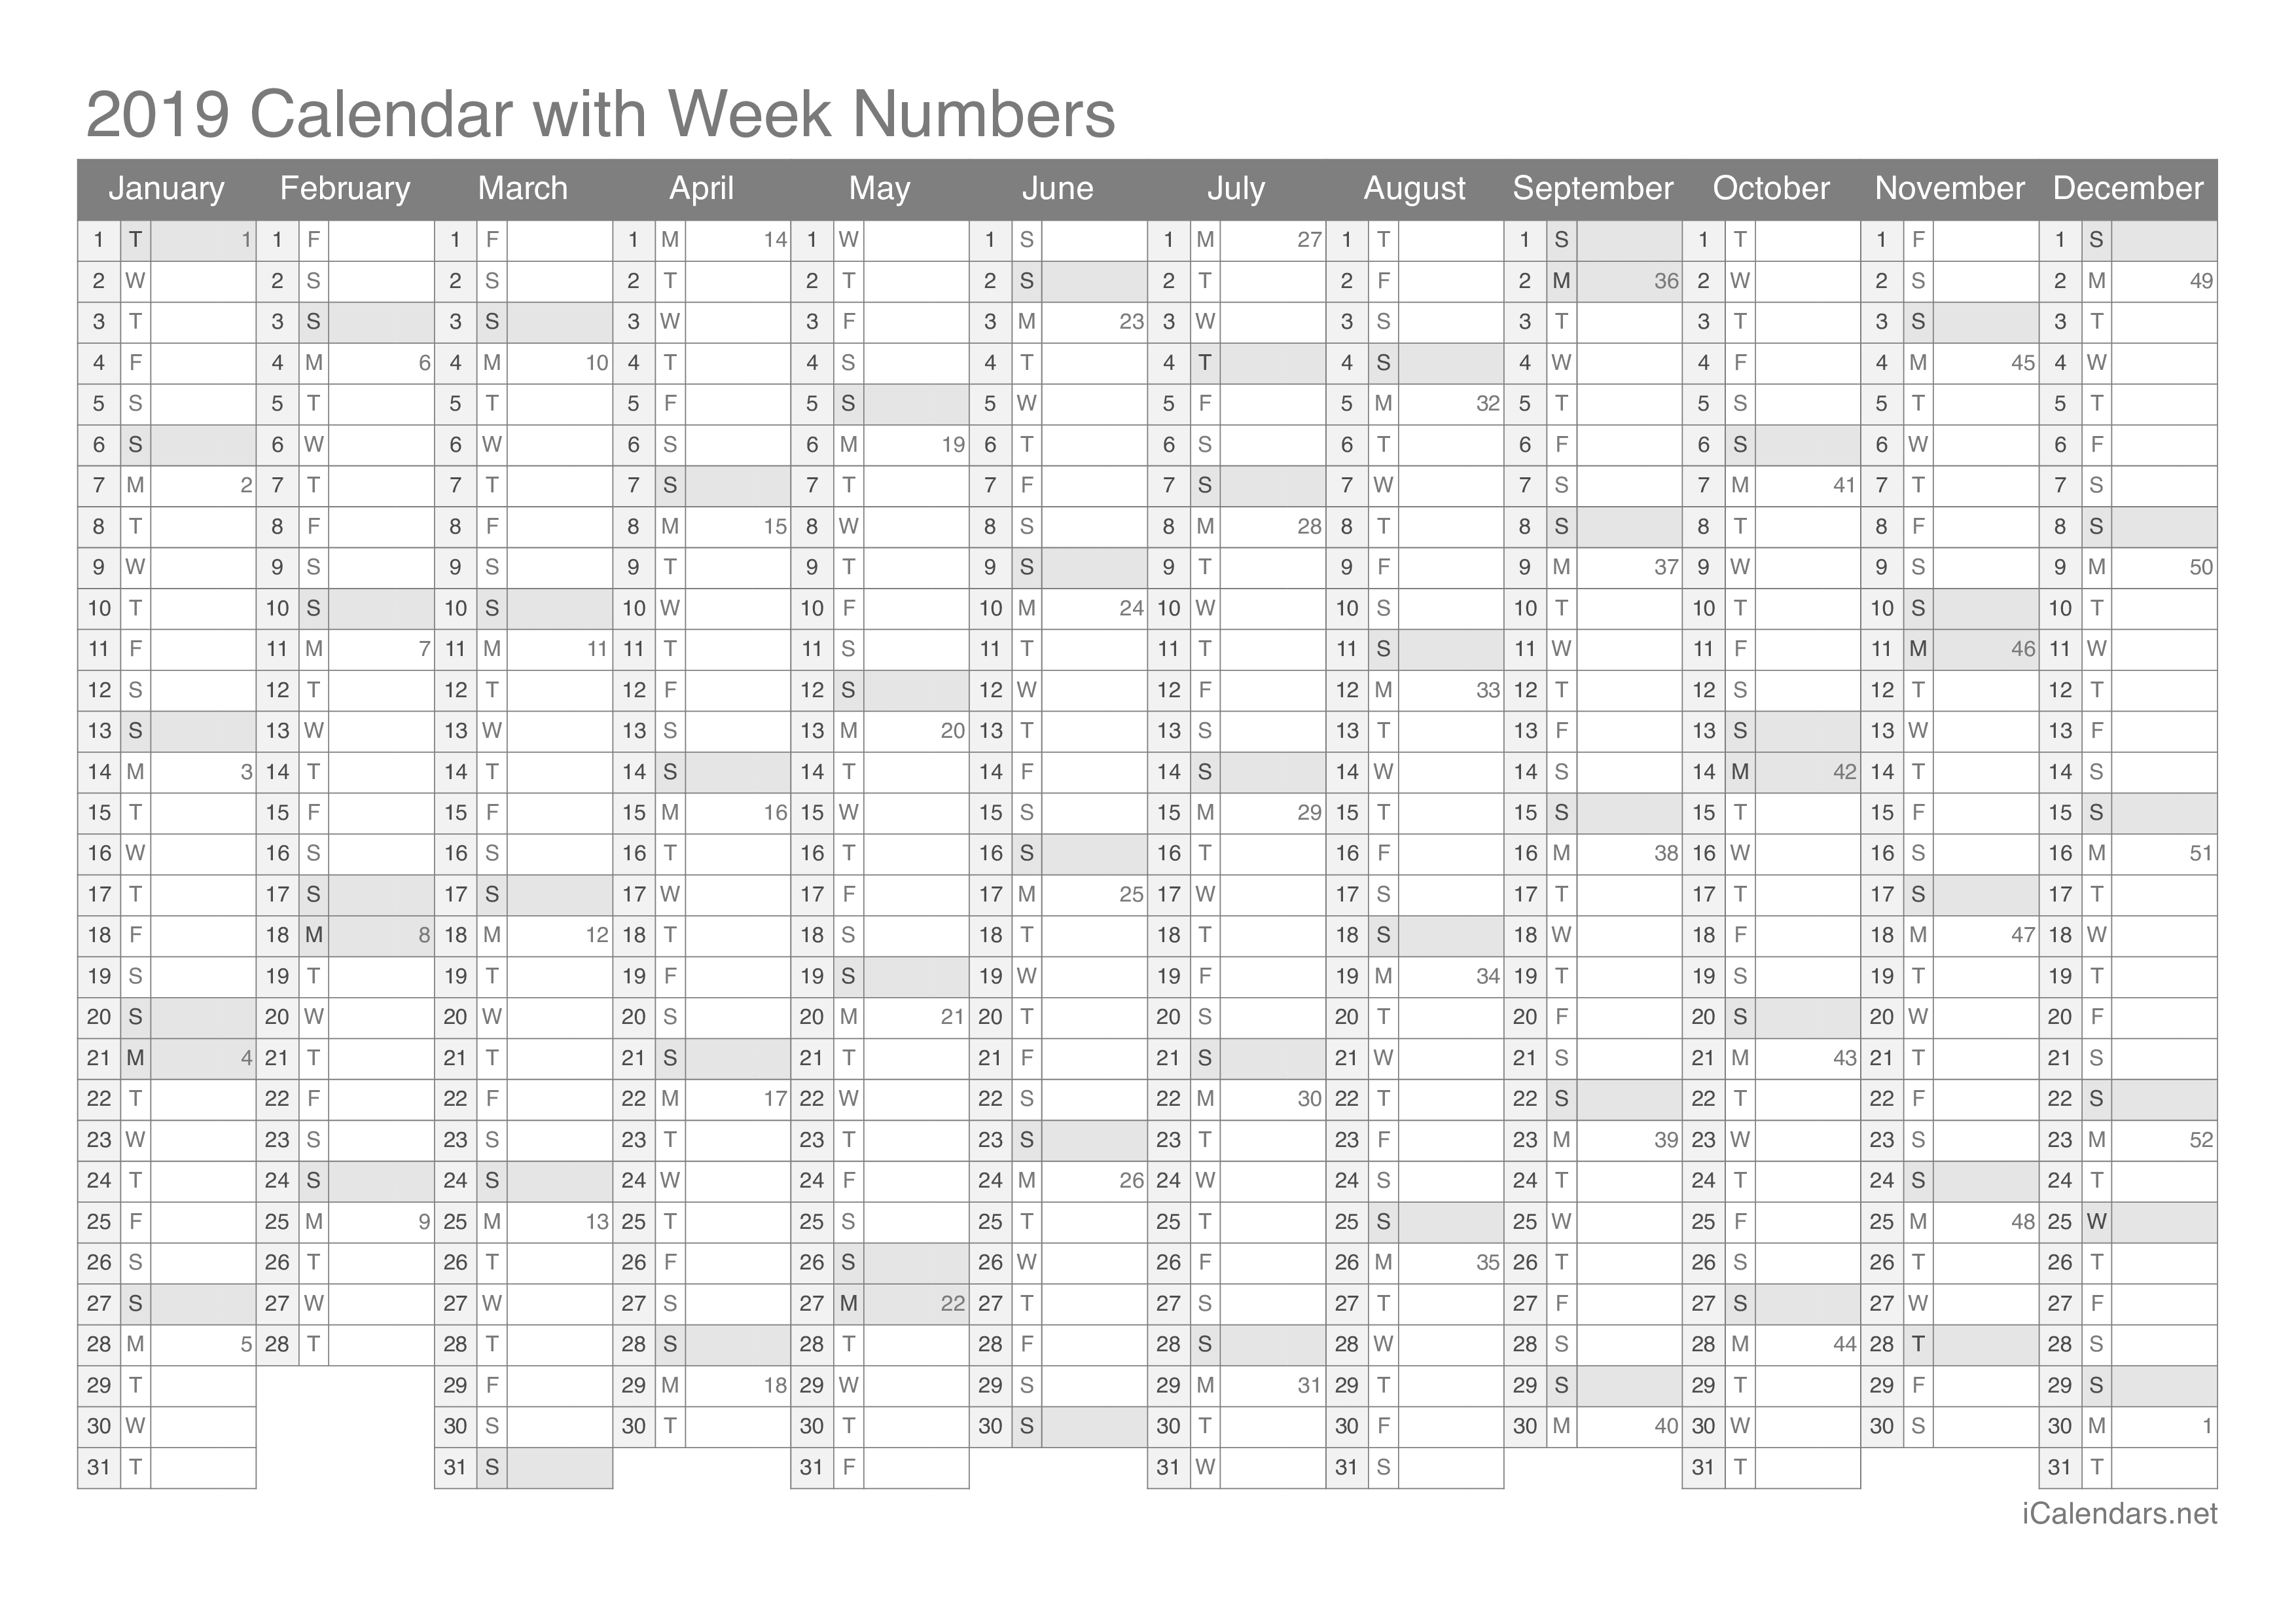 2019 Calendar with week numbers